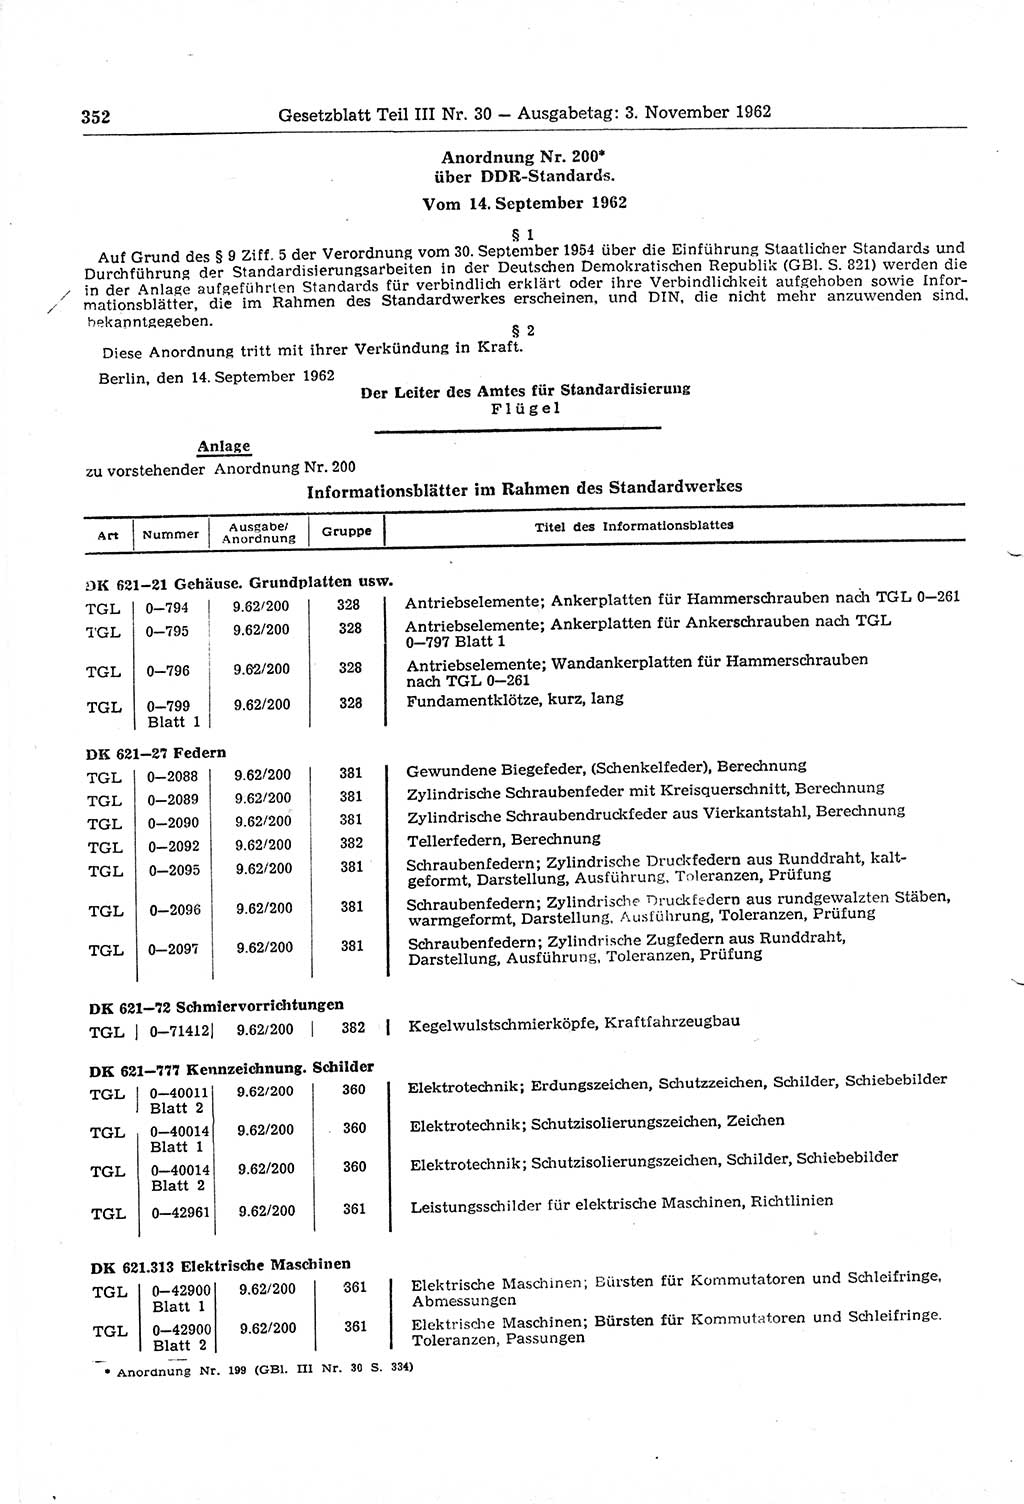 Gesetzblatt (GBl.) der Deutschen Demokratischen Republik (DDR) Teil ⅠⅠⅠ 1962, Seite 352 (GBl. DDR ⅠⅠⅠ 1962, S. 352)